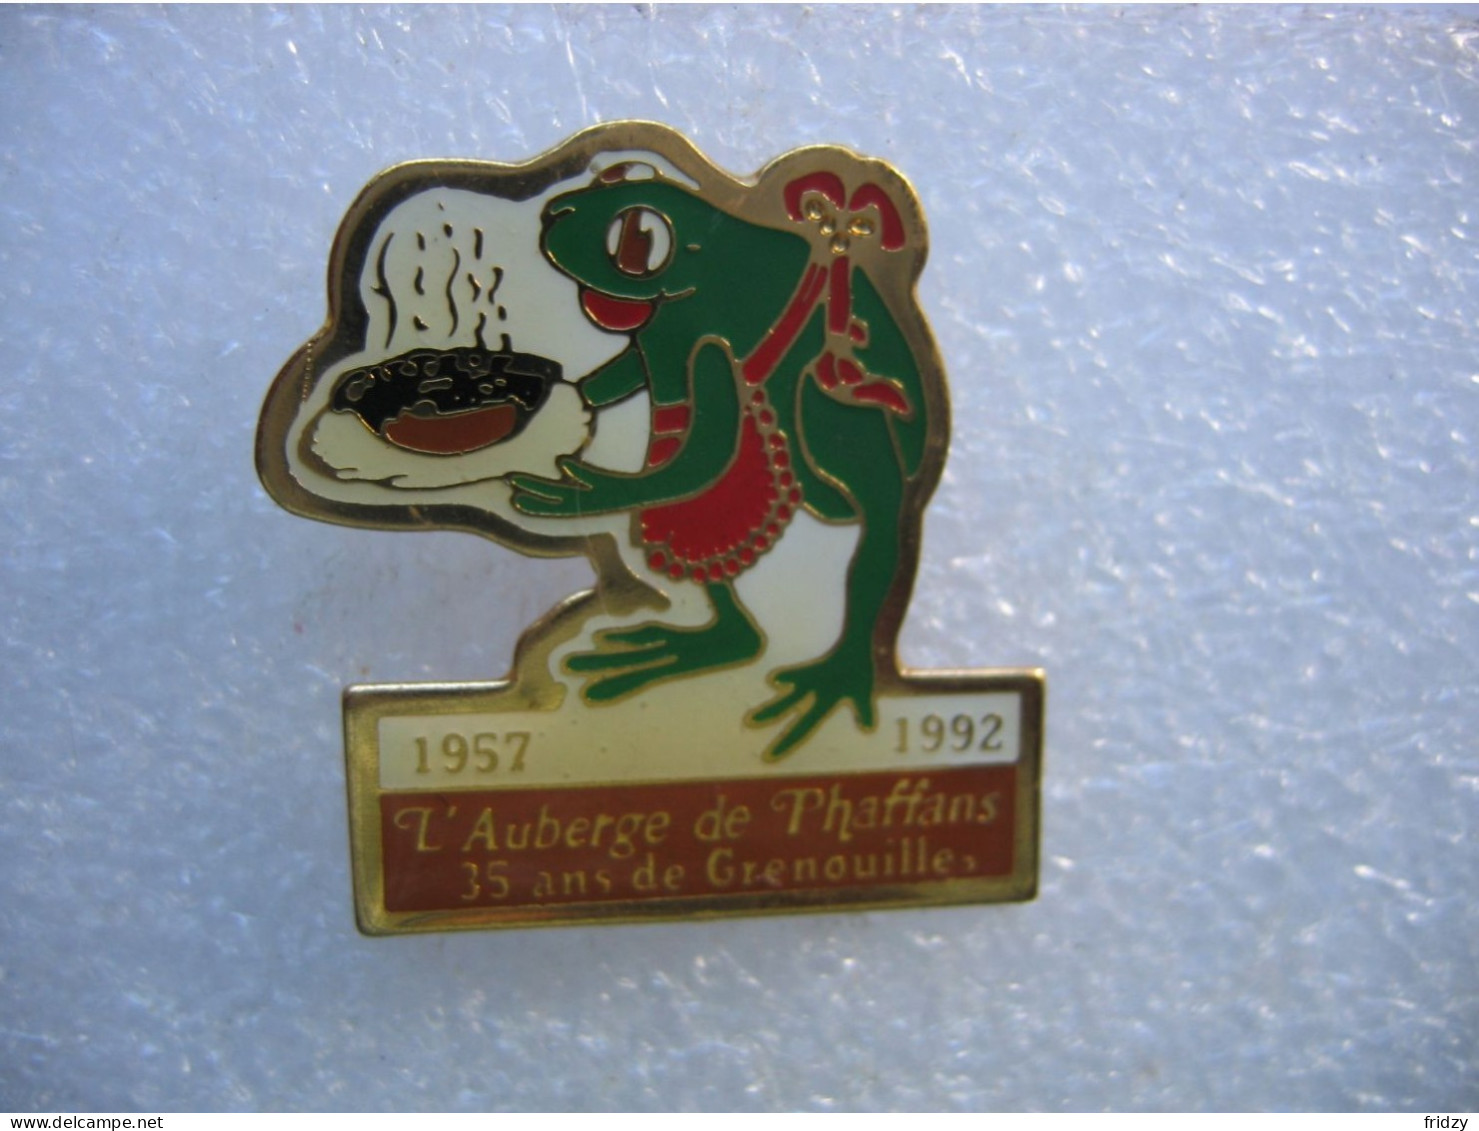 Pin's Frog, 1957-1992 L'auberge De Phaffans (Dépt 90), 35 Ans De Grenouilles - Alimentation